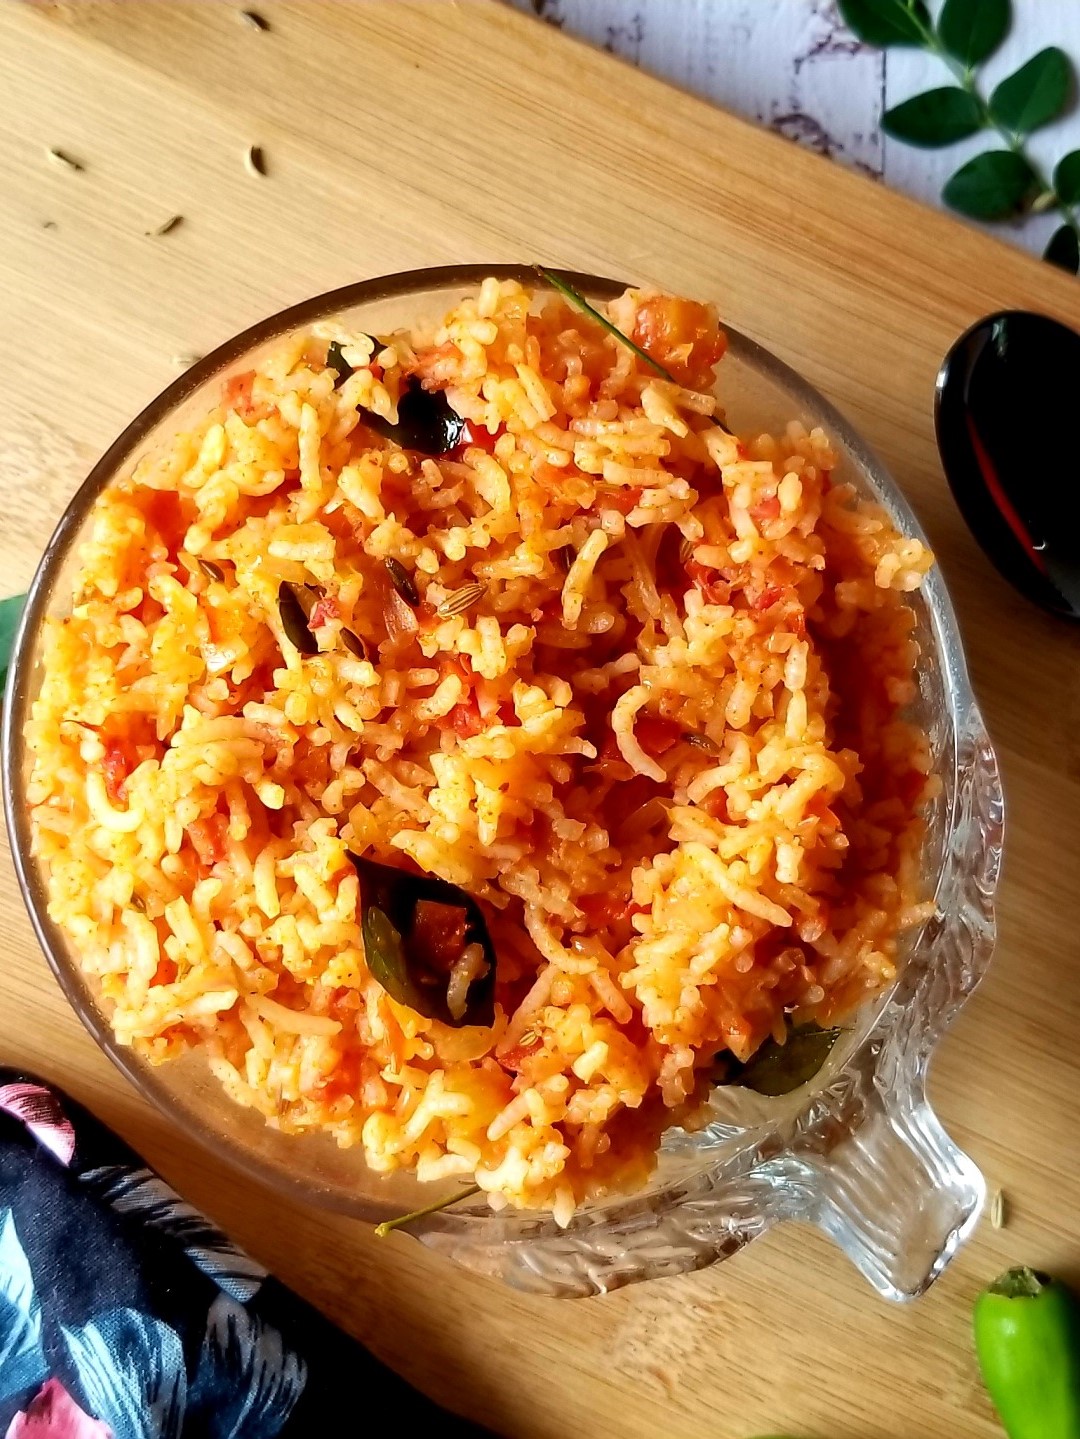 Easy Tomato Rice